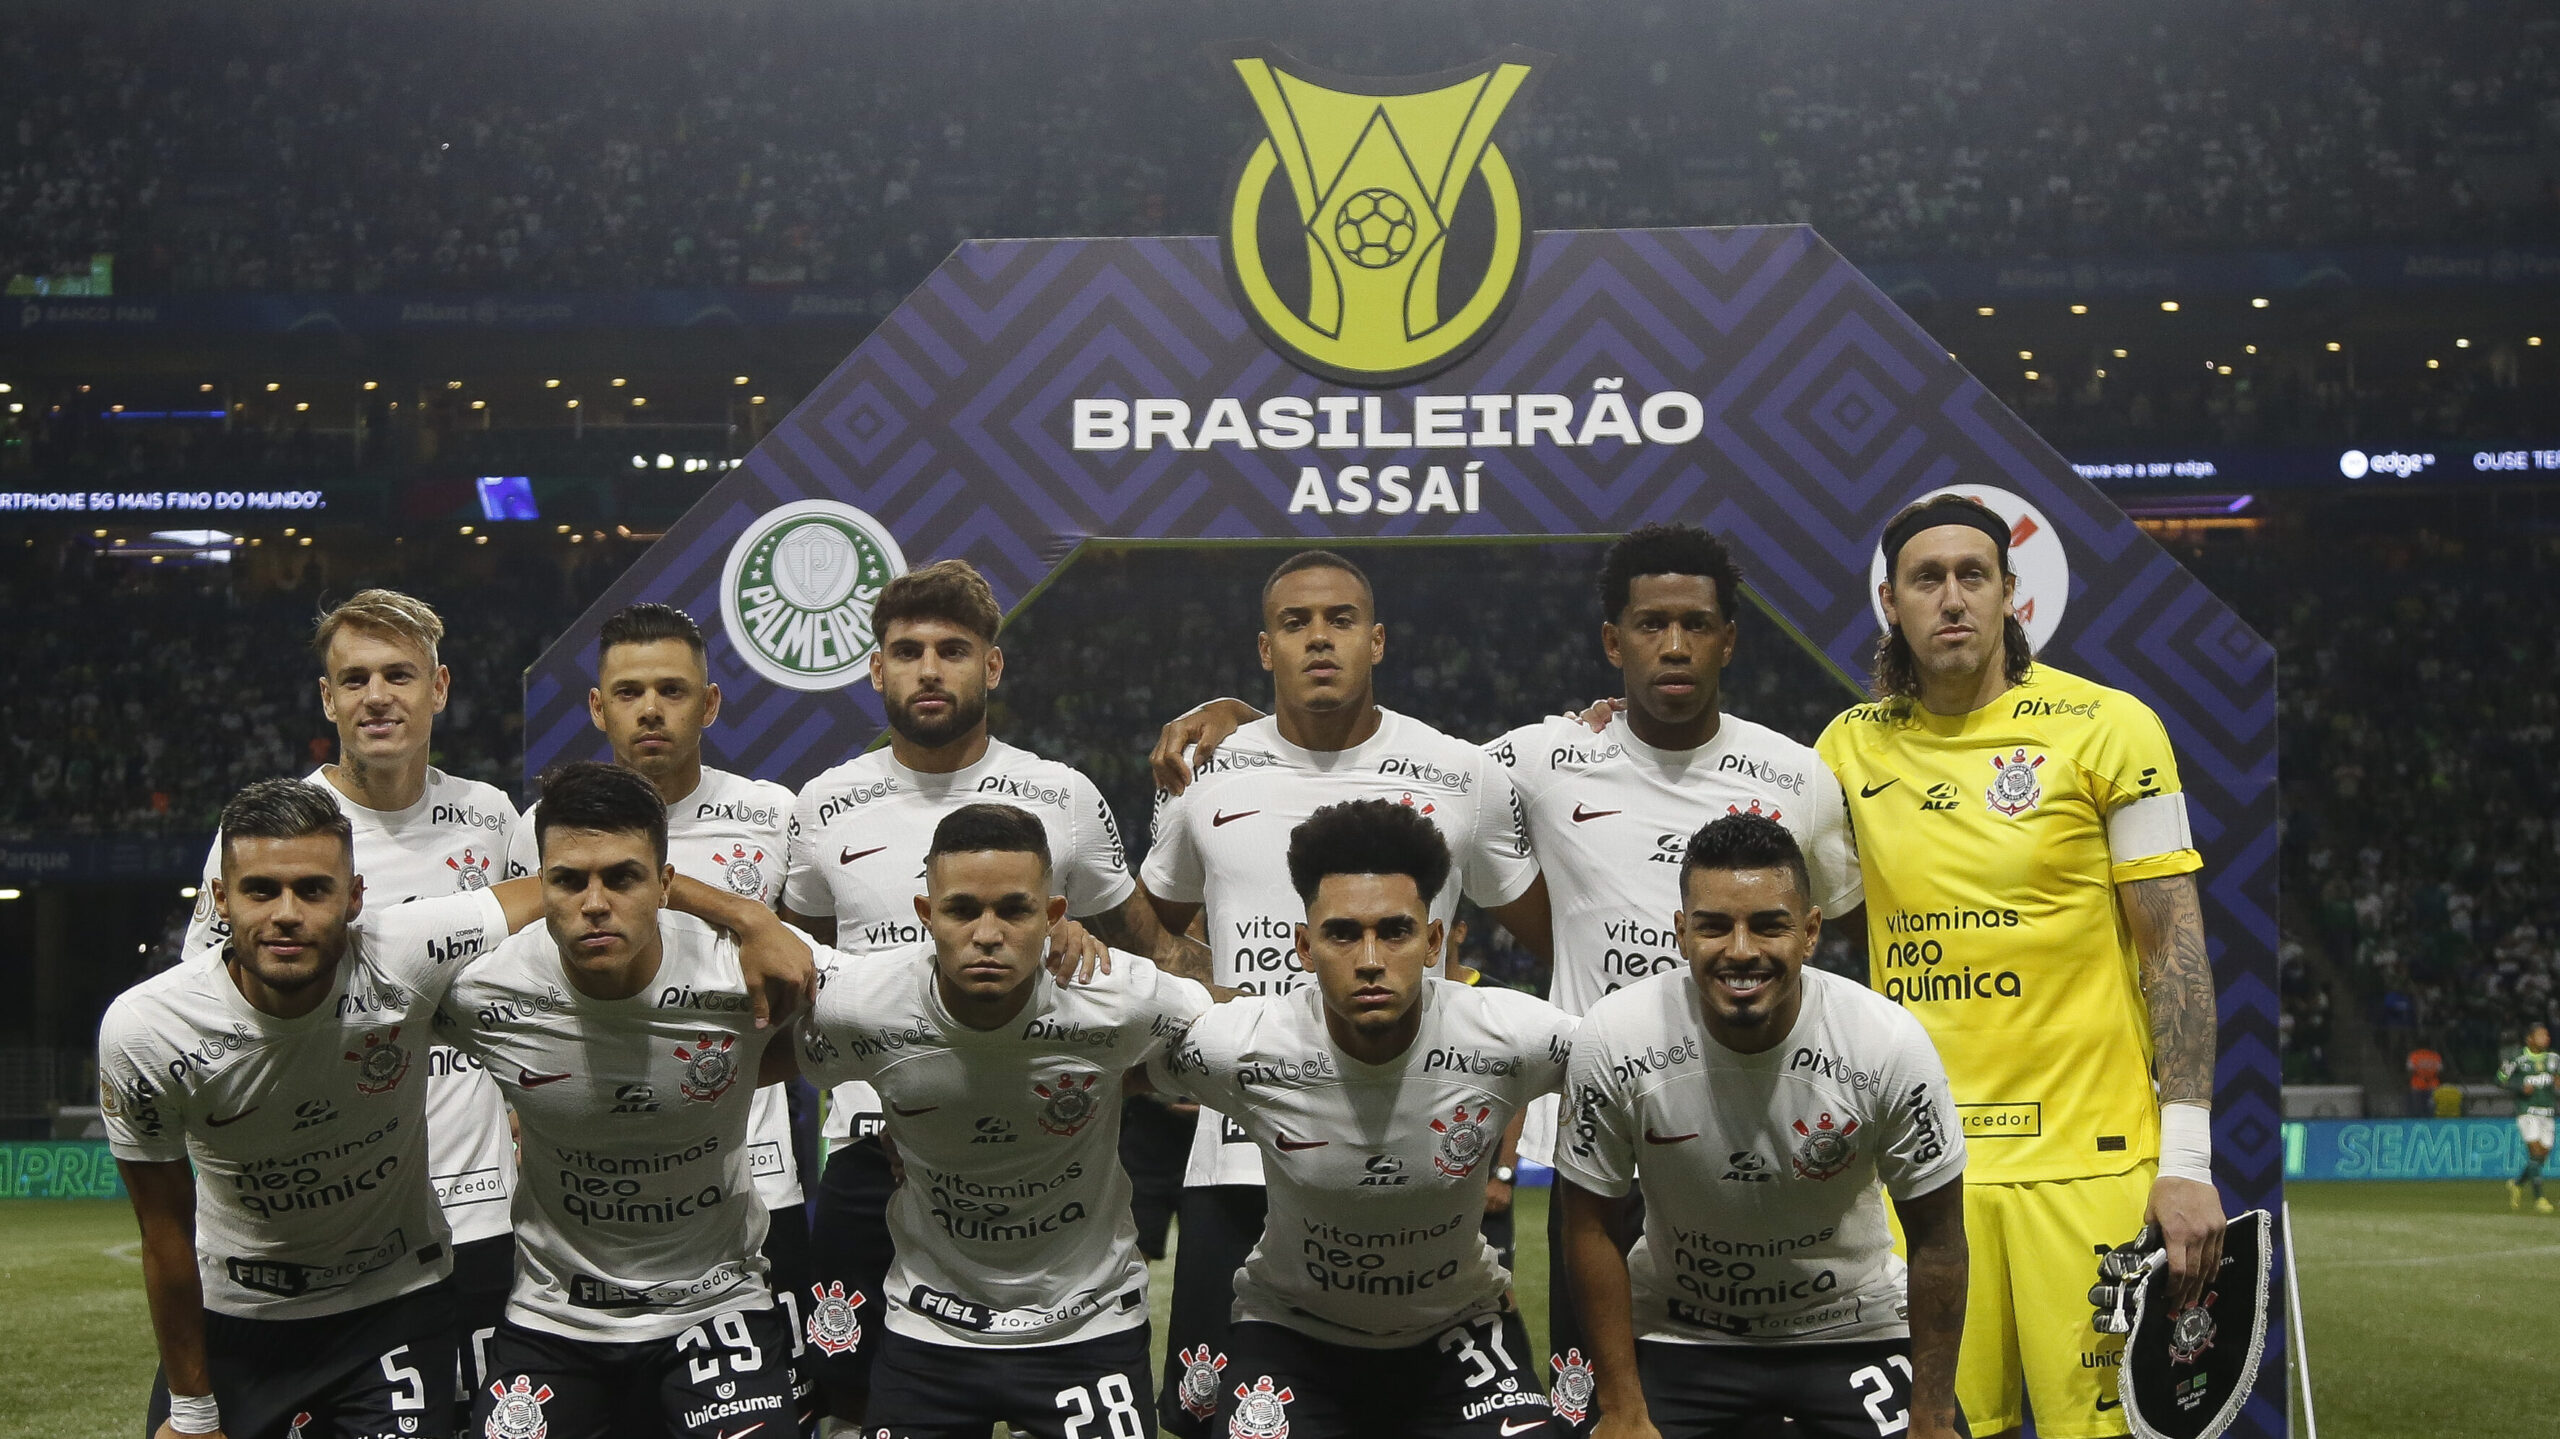 Cássio alcança marca de segundo maior pegador de pênaltis do Corinthians;  São Paulo é maior vítima